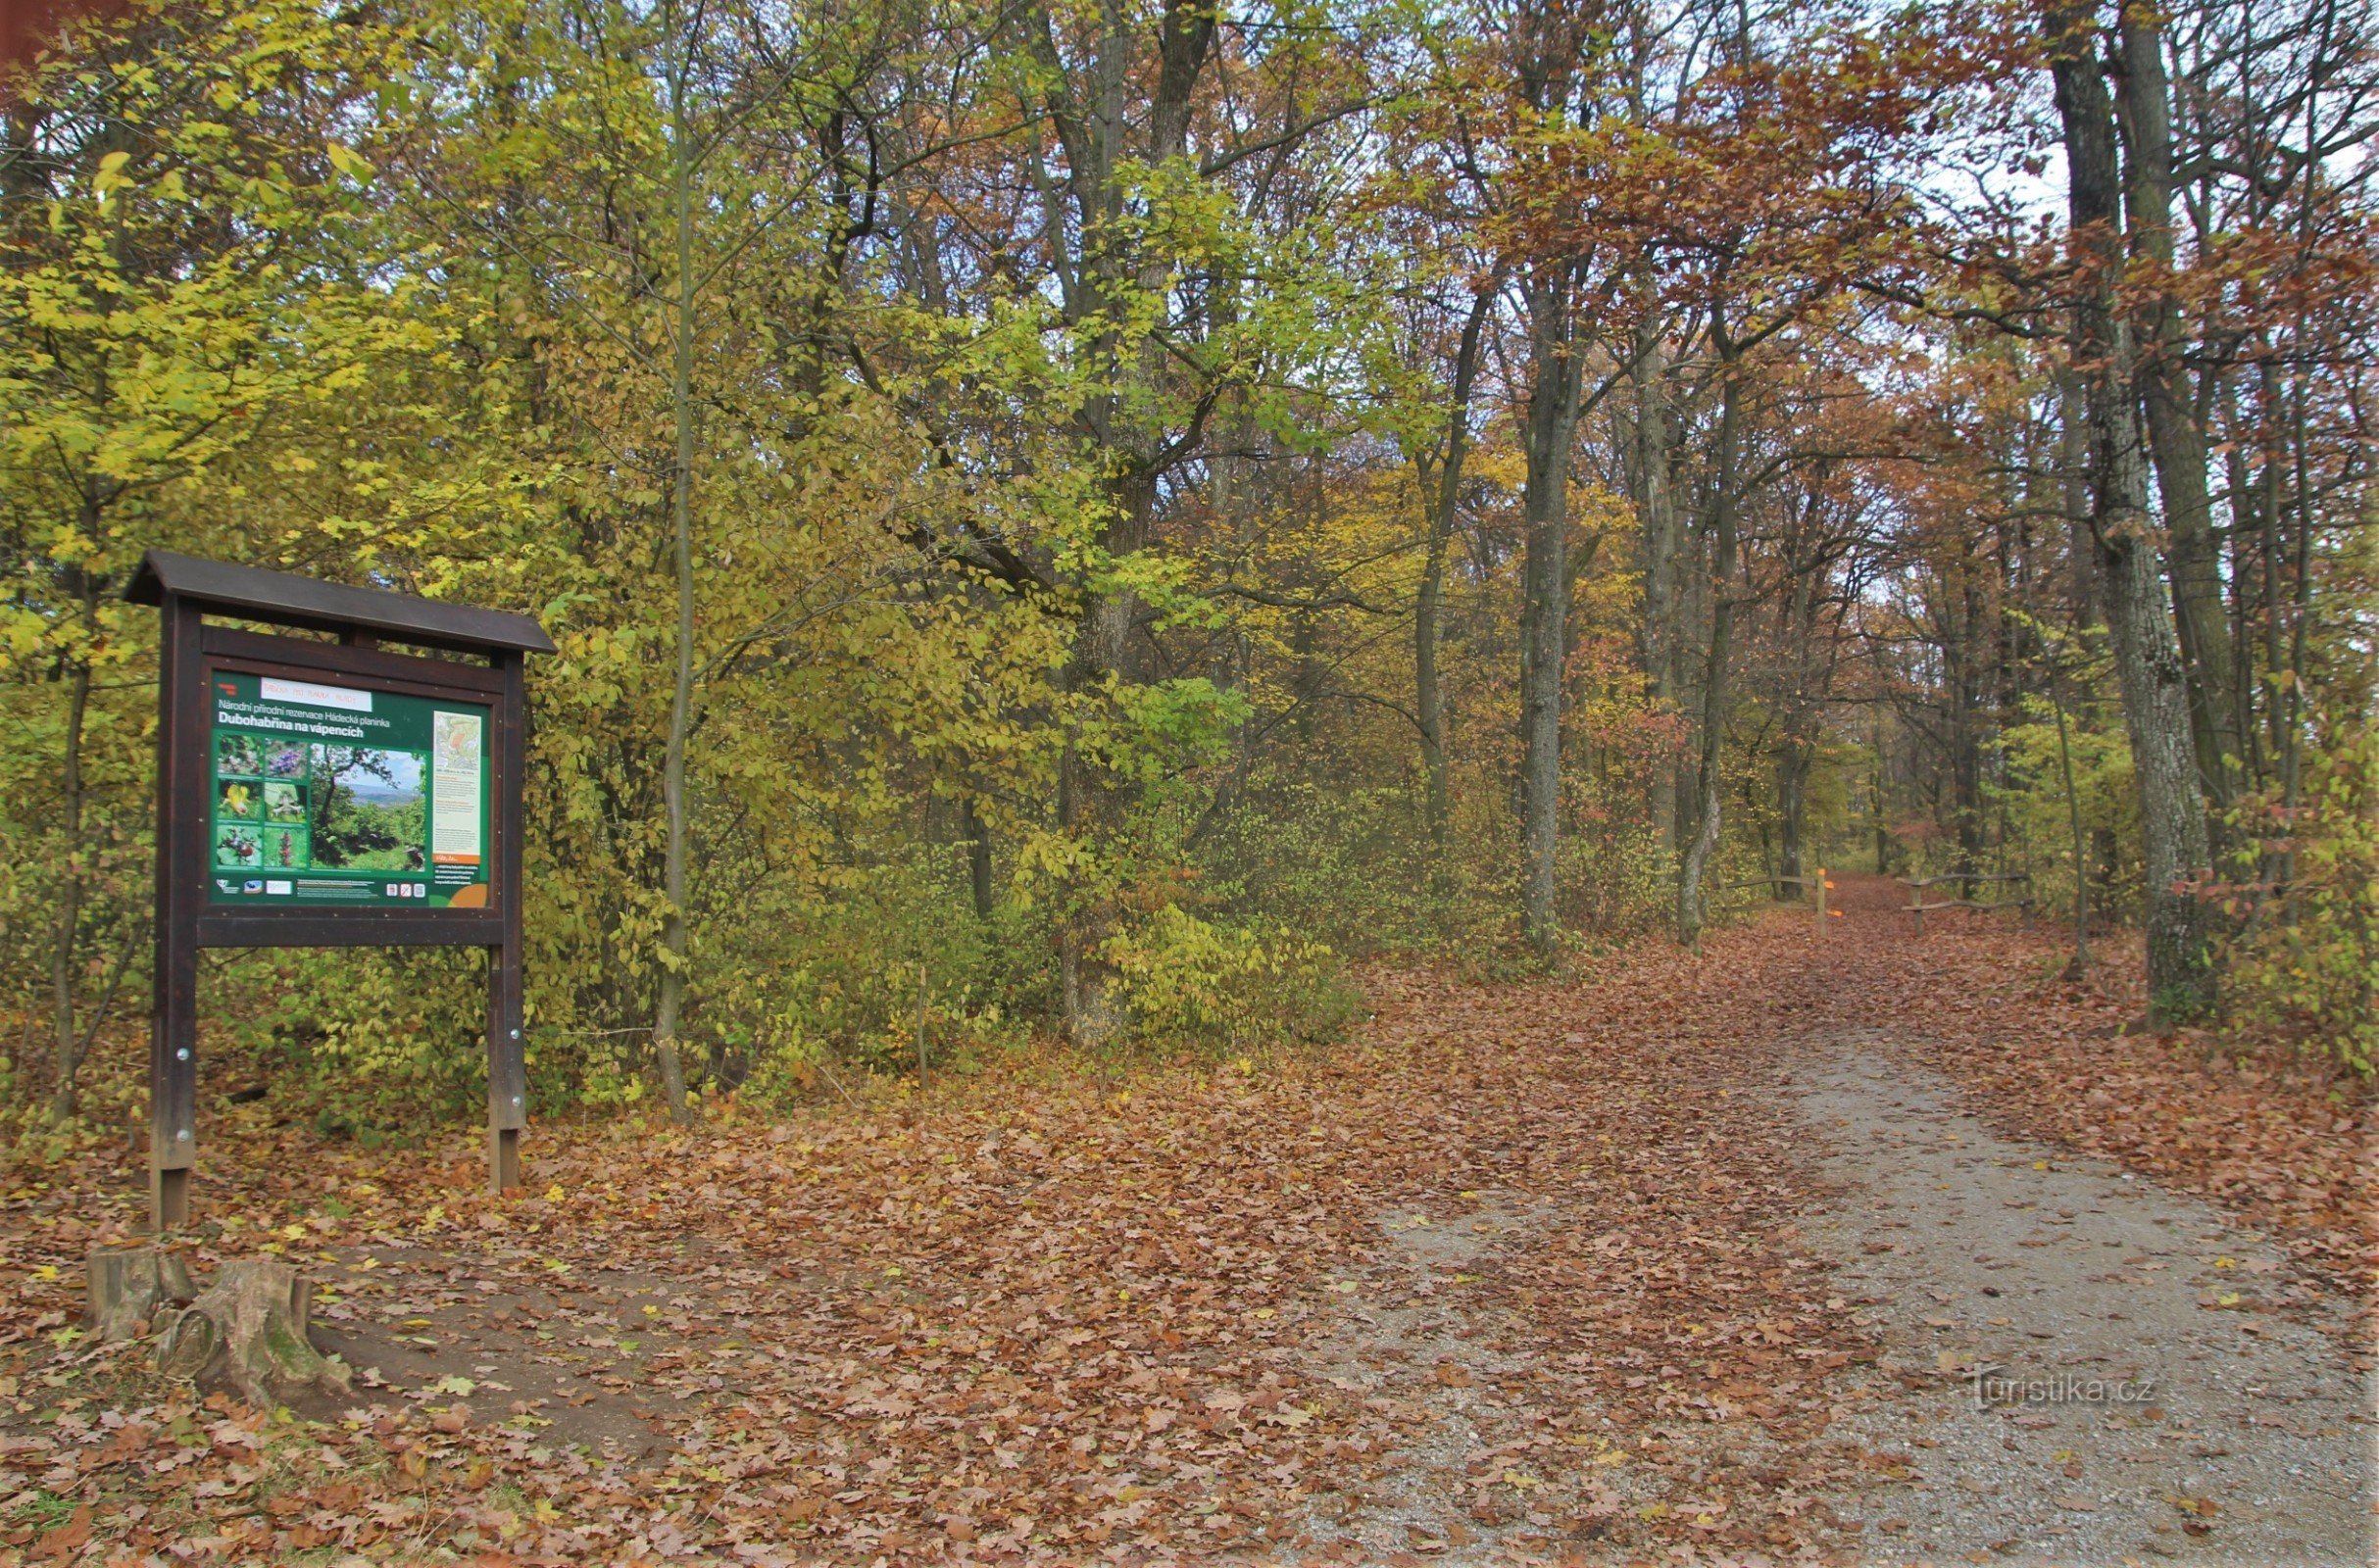 At the crossroads of Velká Klajdovka, game reserve